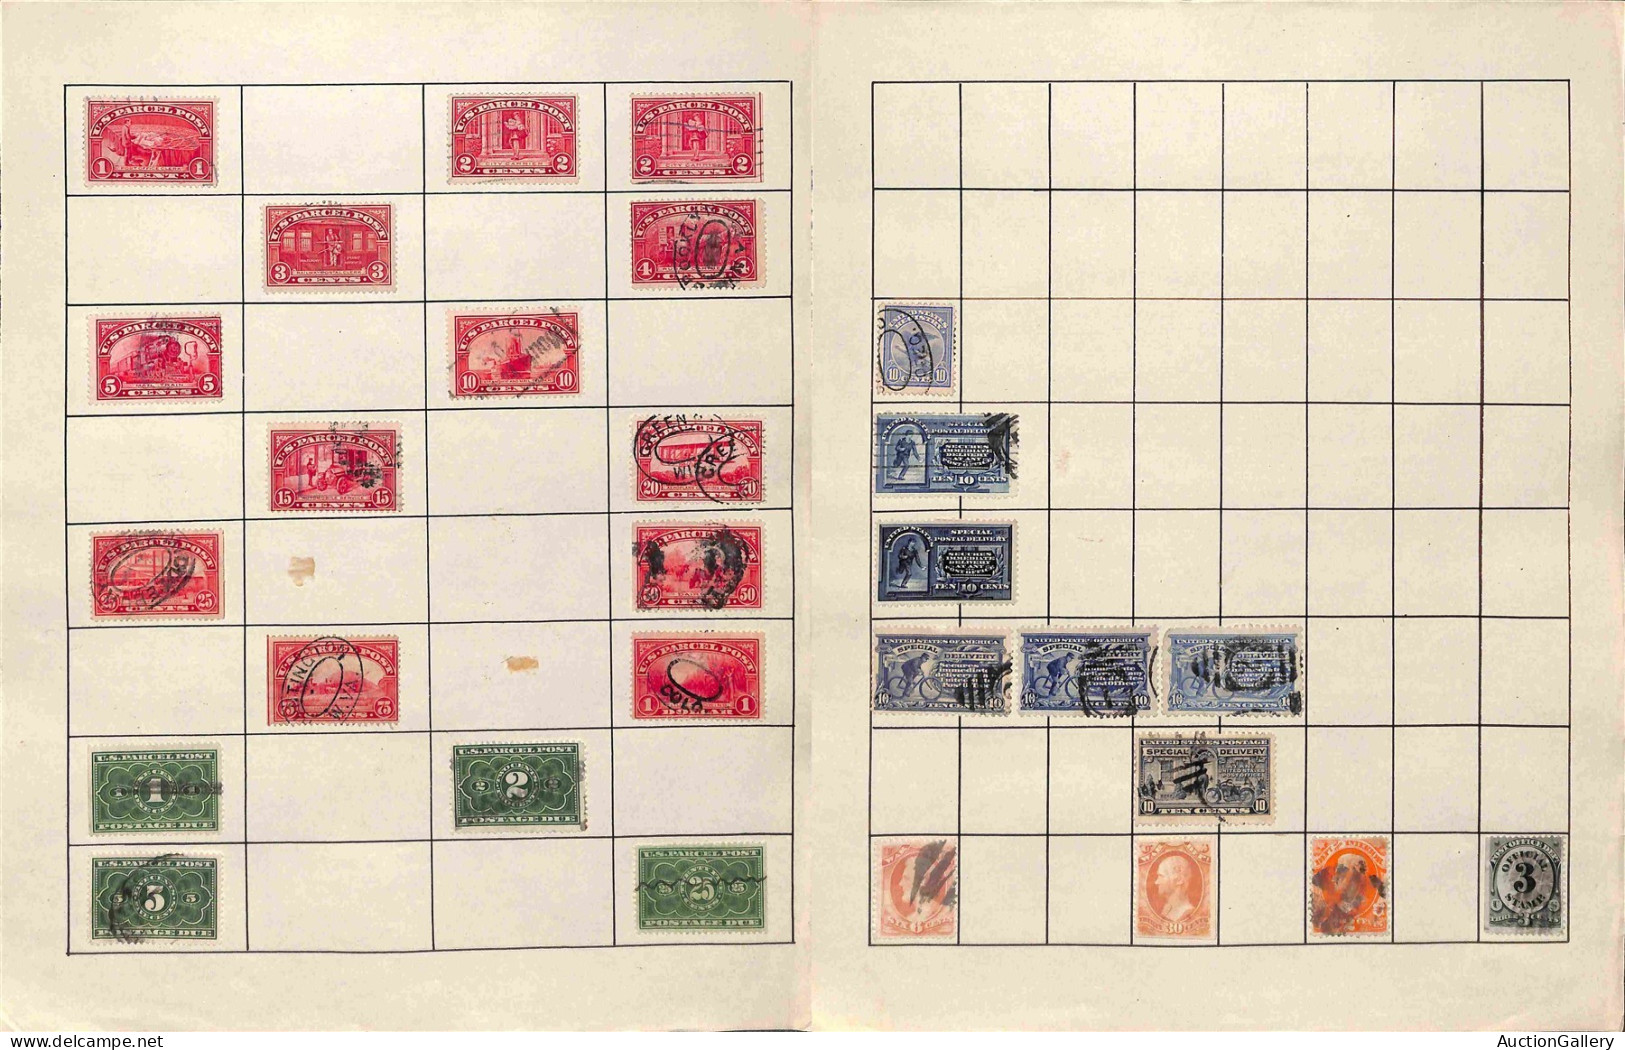 Lotti&Collezioni - STATI UNITI D'AMERICA - 1851/1935 - Collezione di valori usati del periodo con ripetizioni montati su